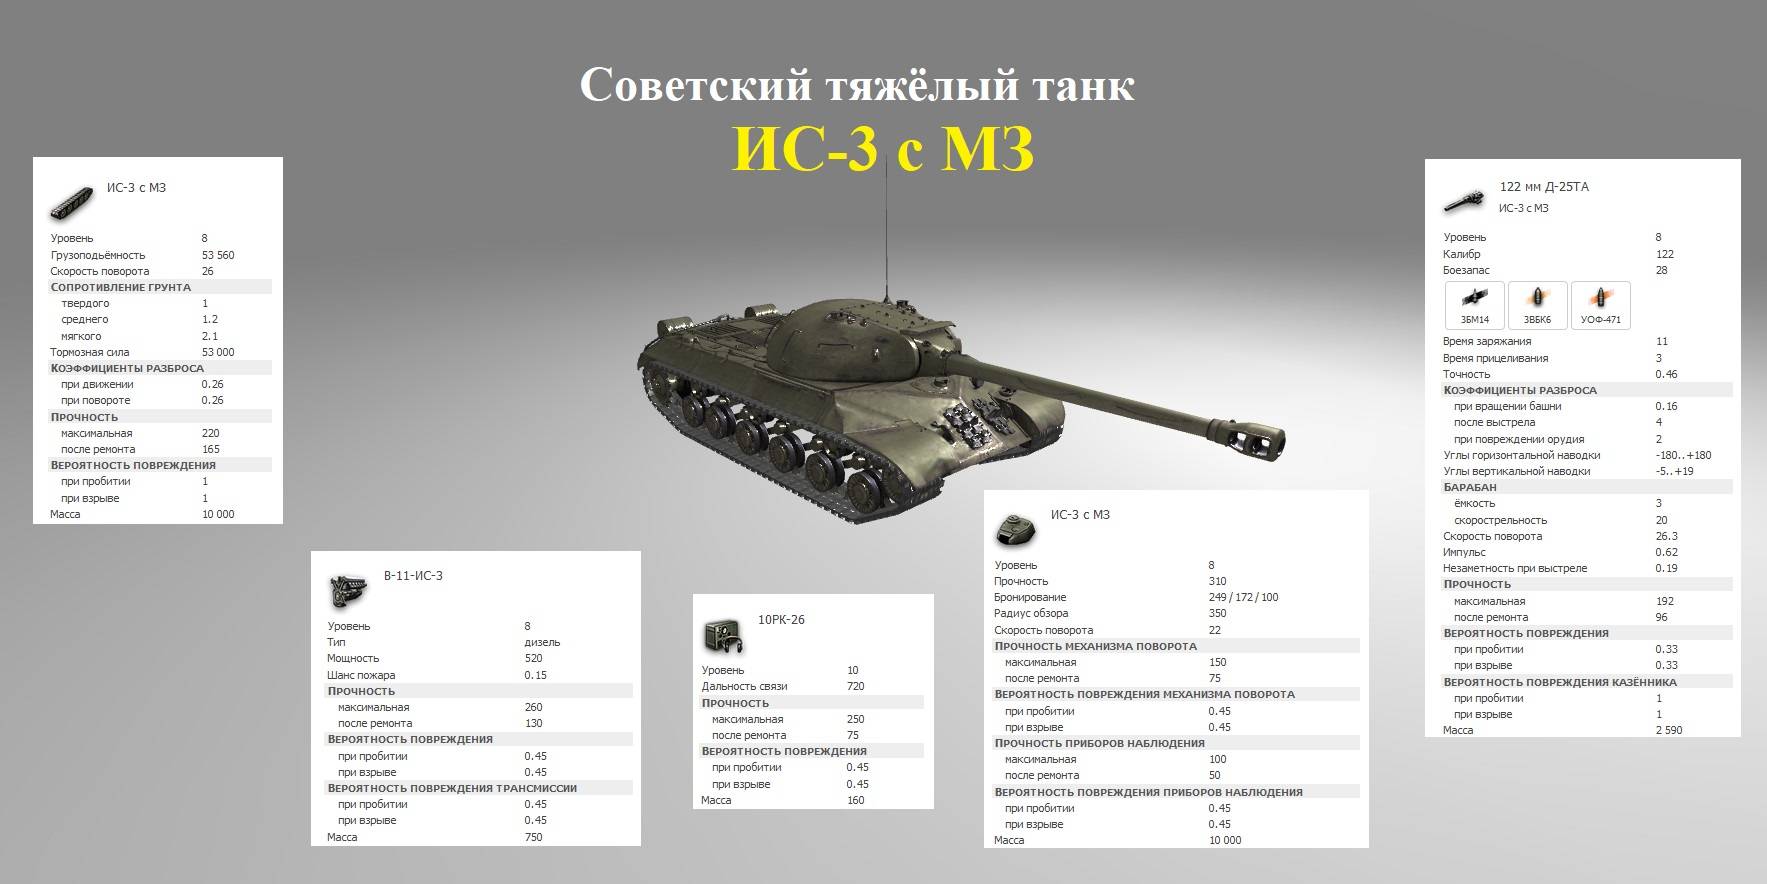 Ис-6 - советский опытный тяжелый танк | tanki-tut.ru - вся бронетехника мира тут